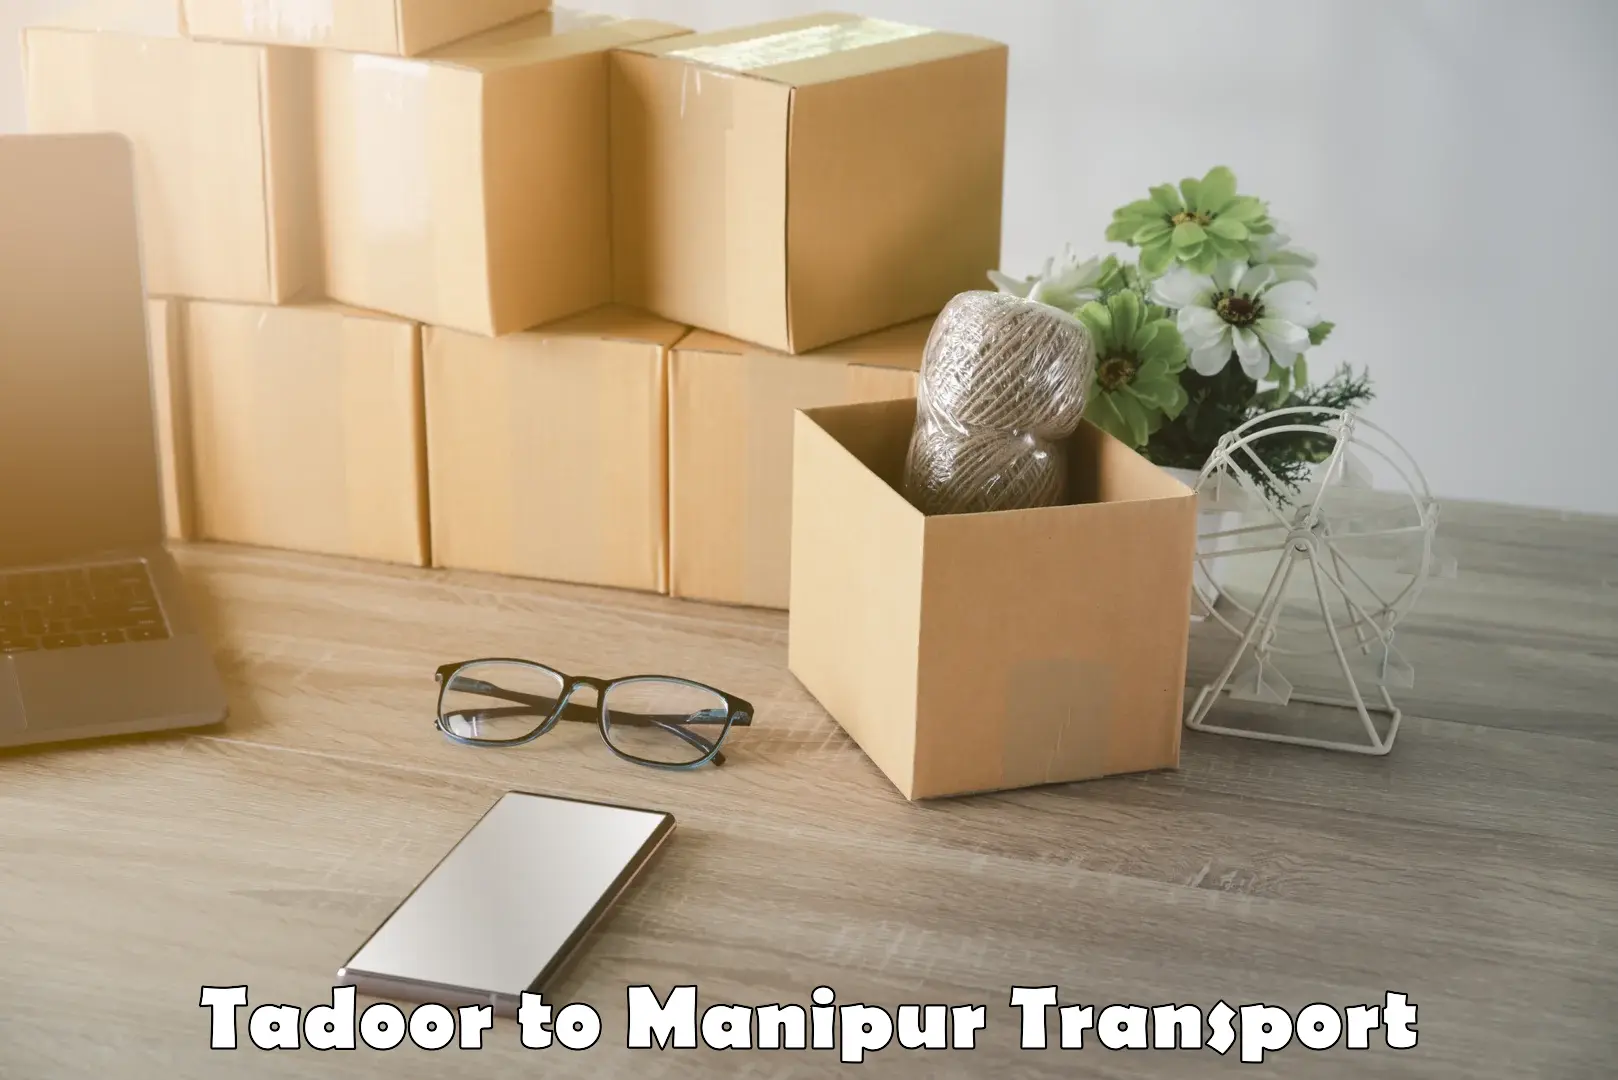 Cargo transport services Tadoor to Moirang